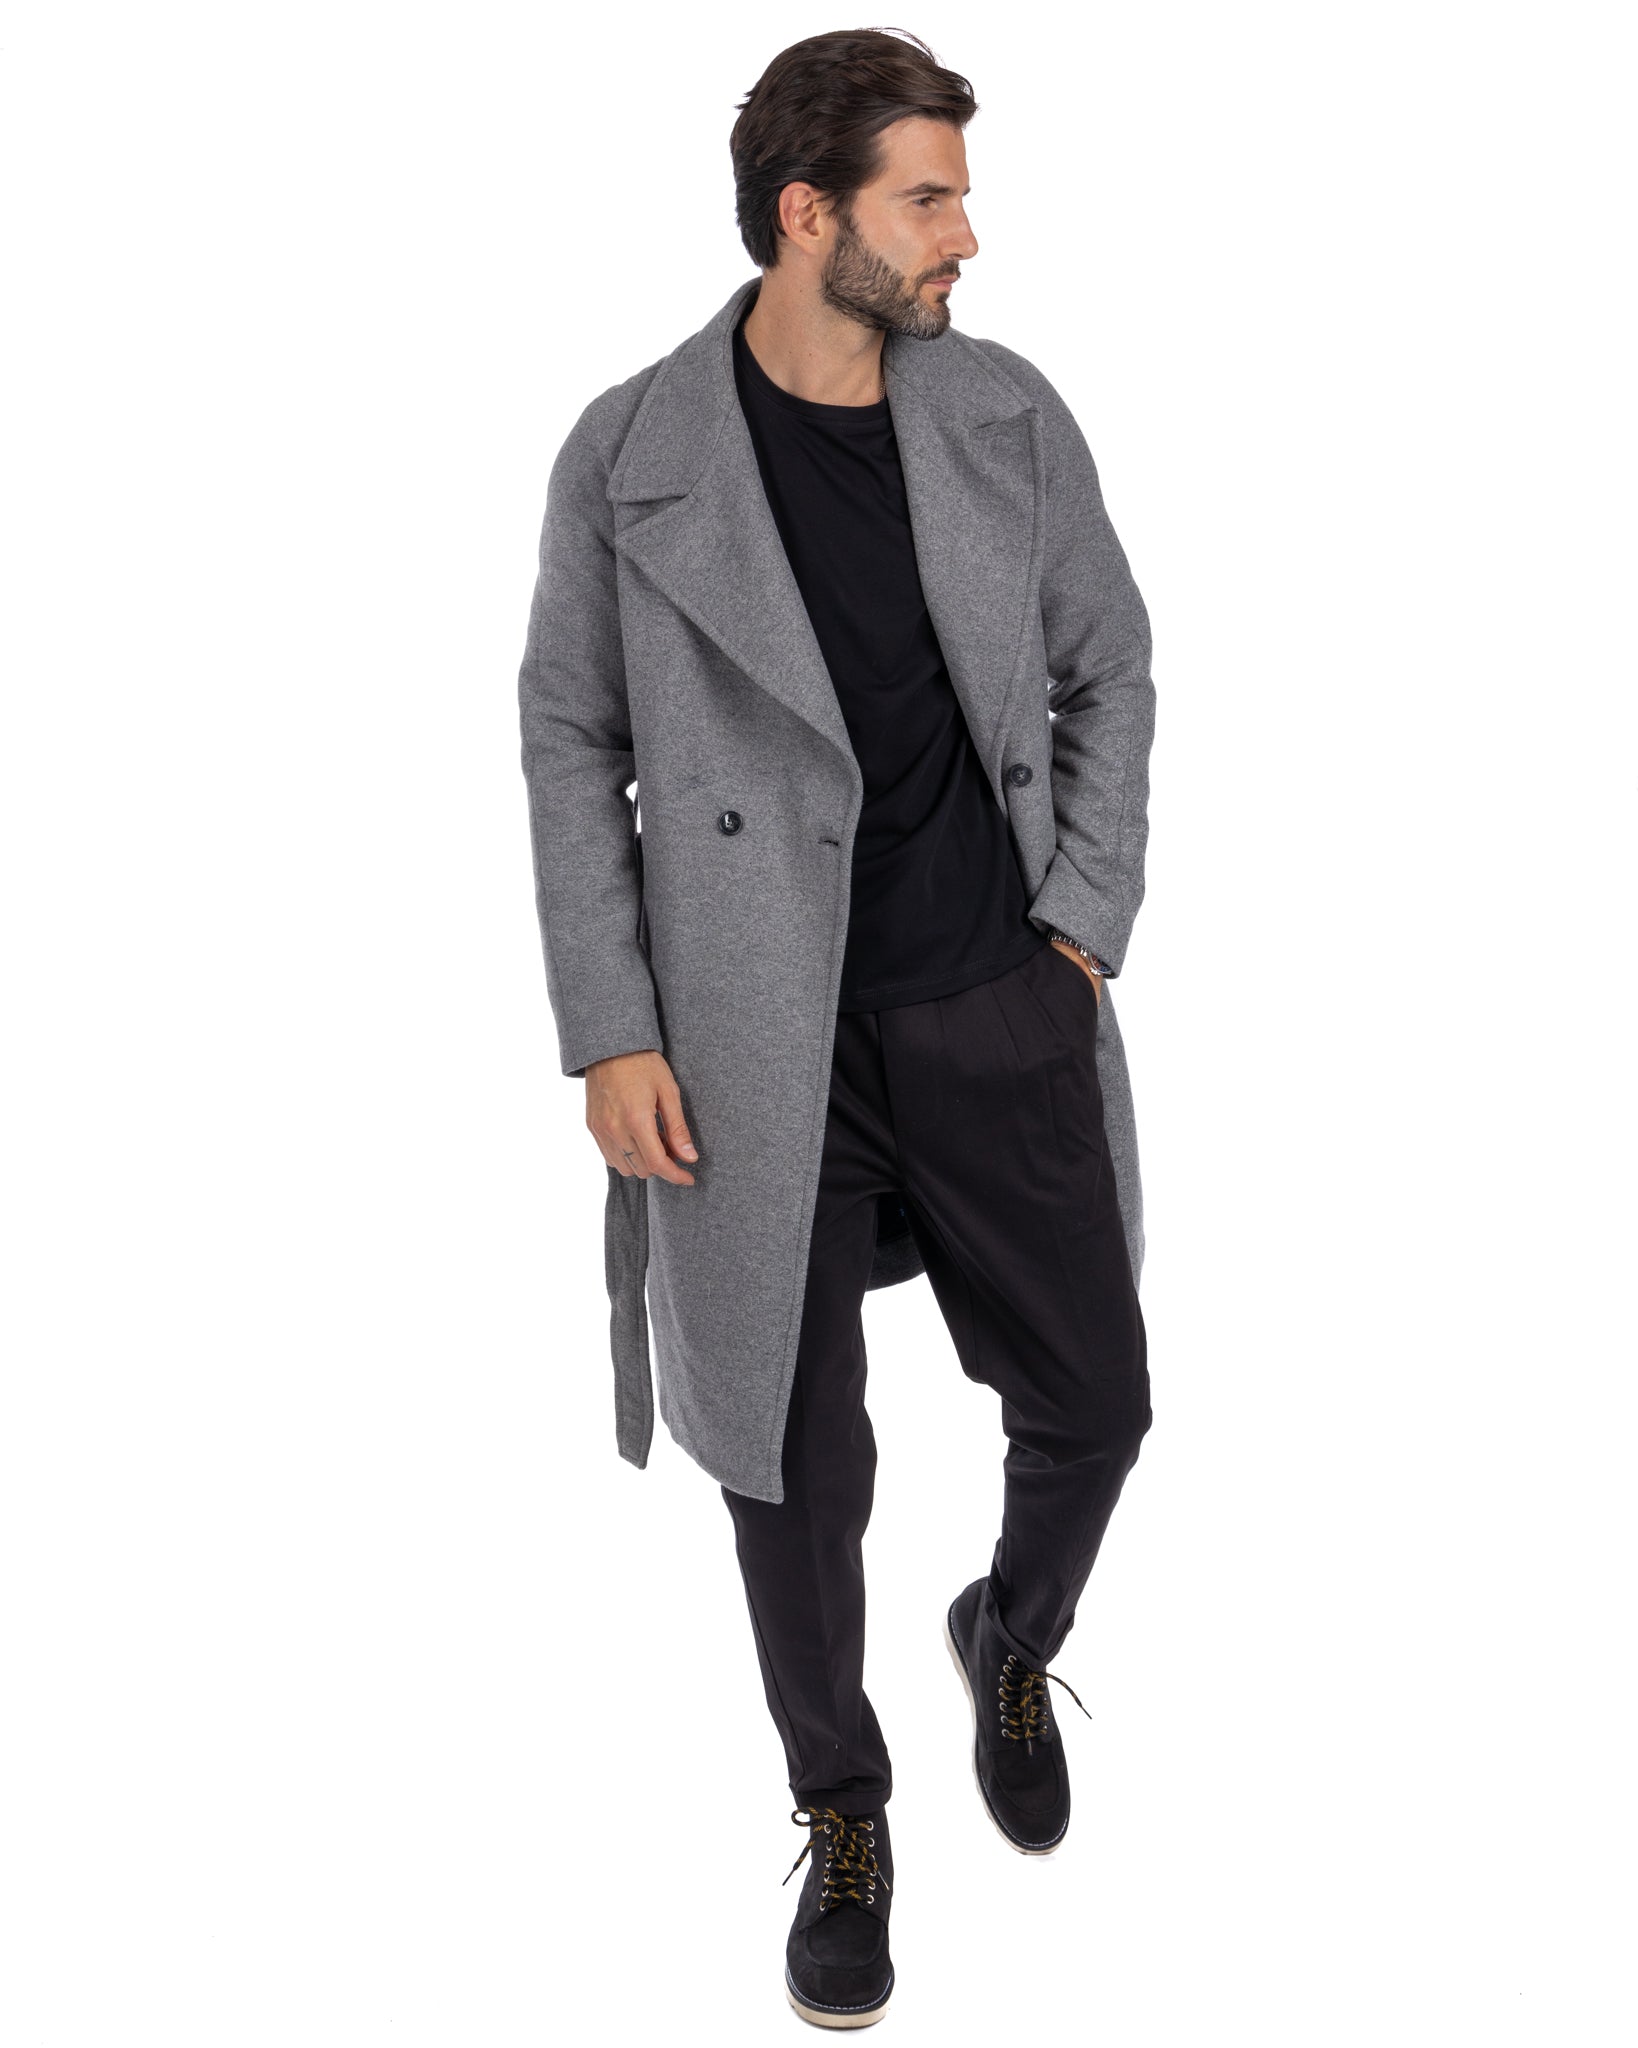 Claude - cappotto vestaglia grigio chiaro